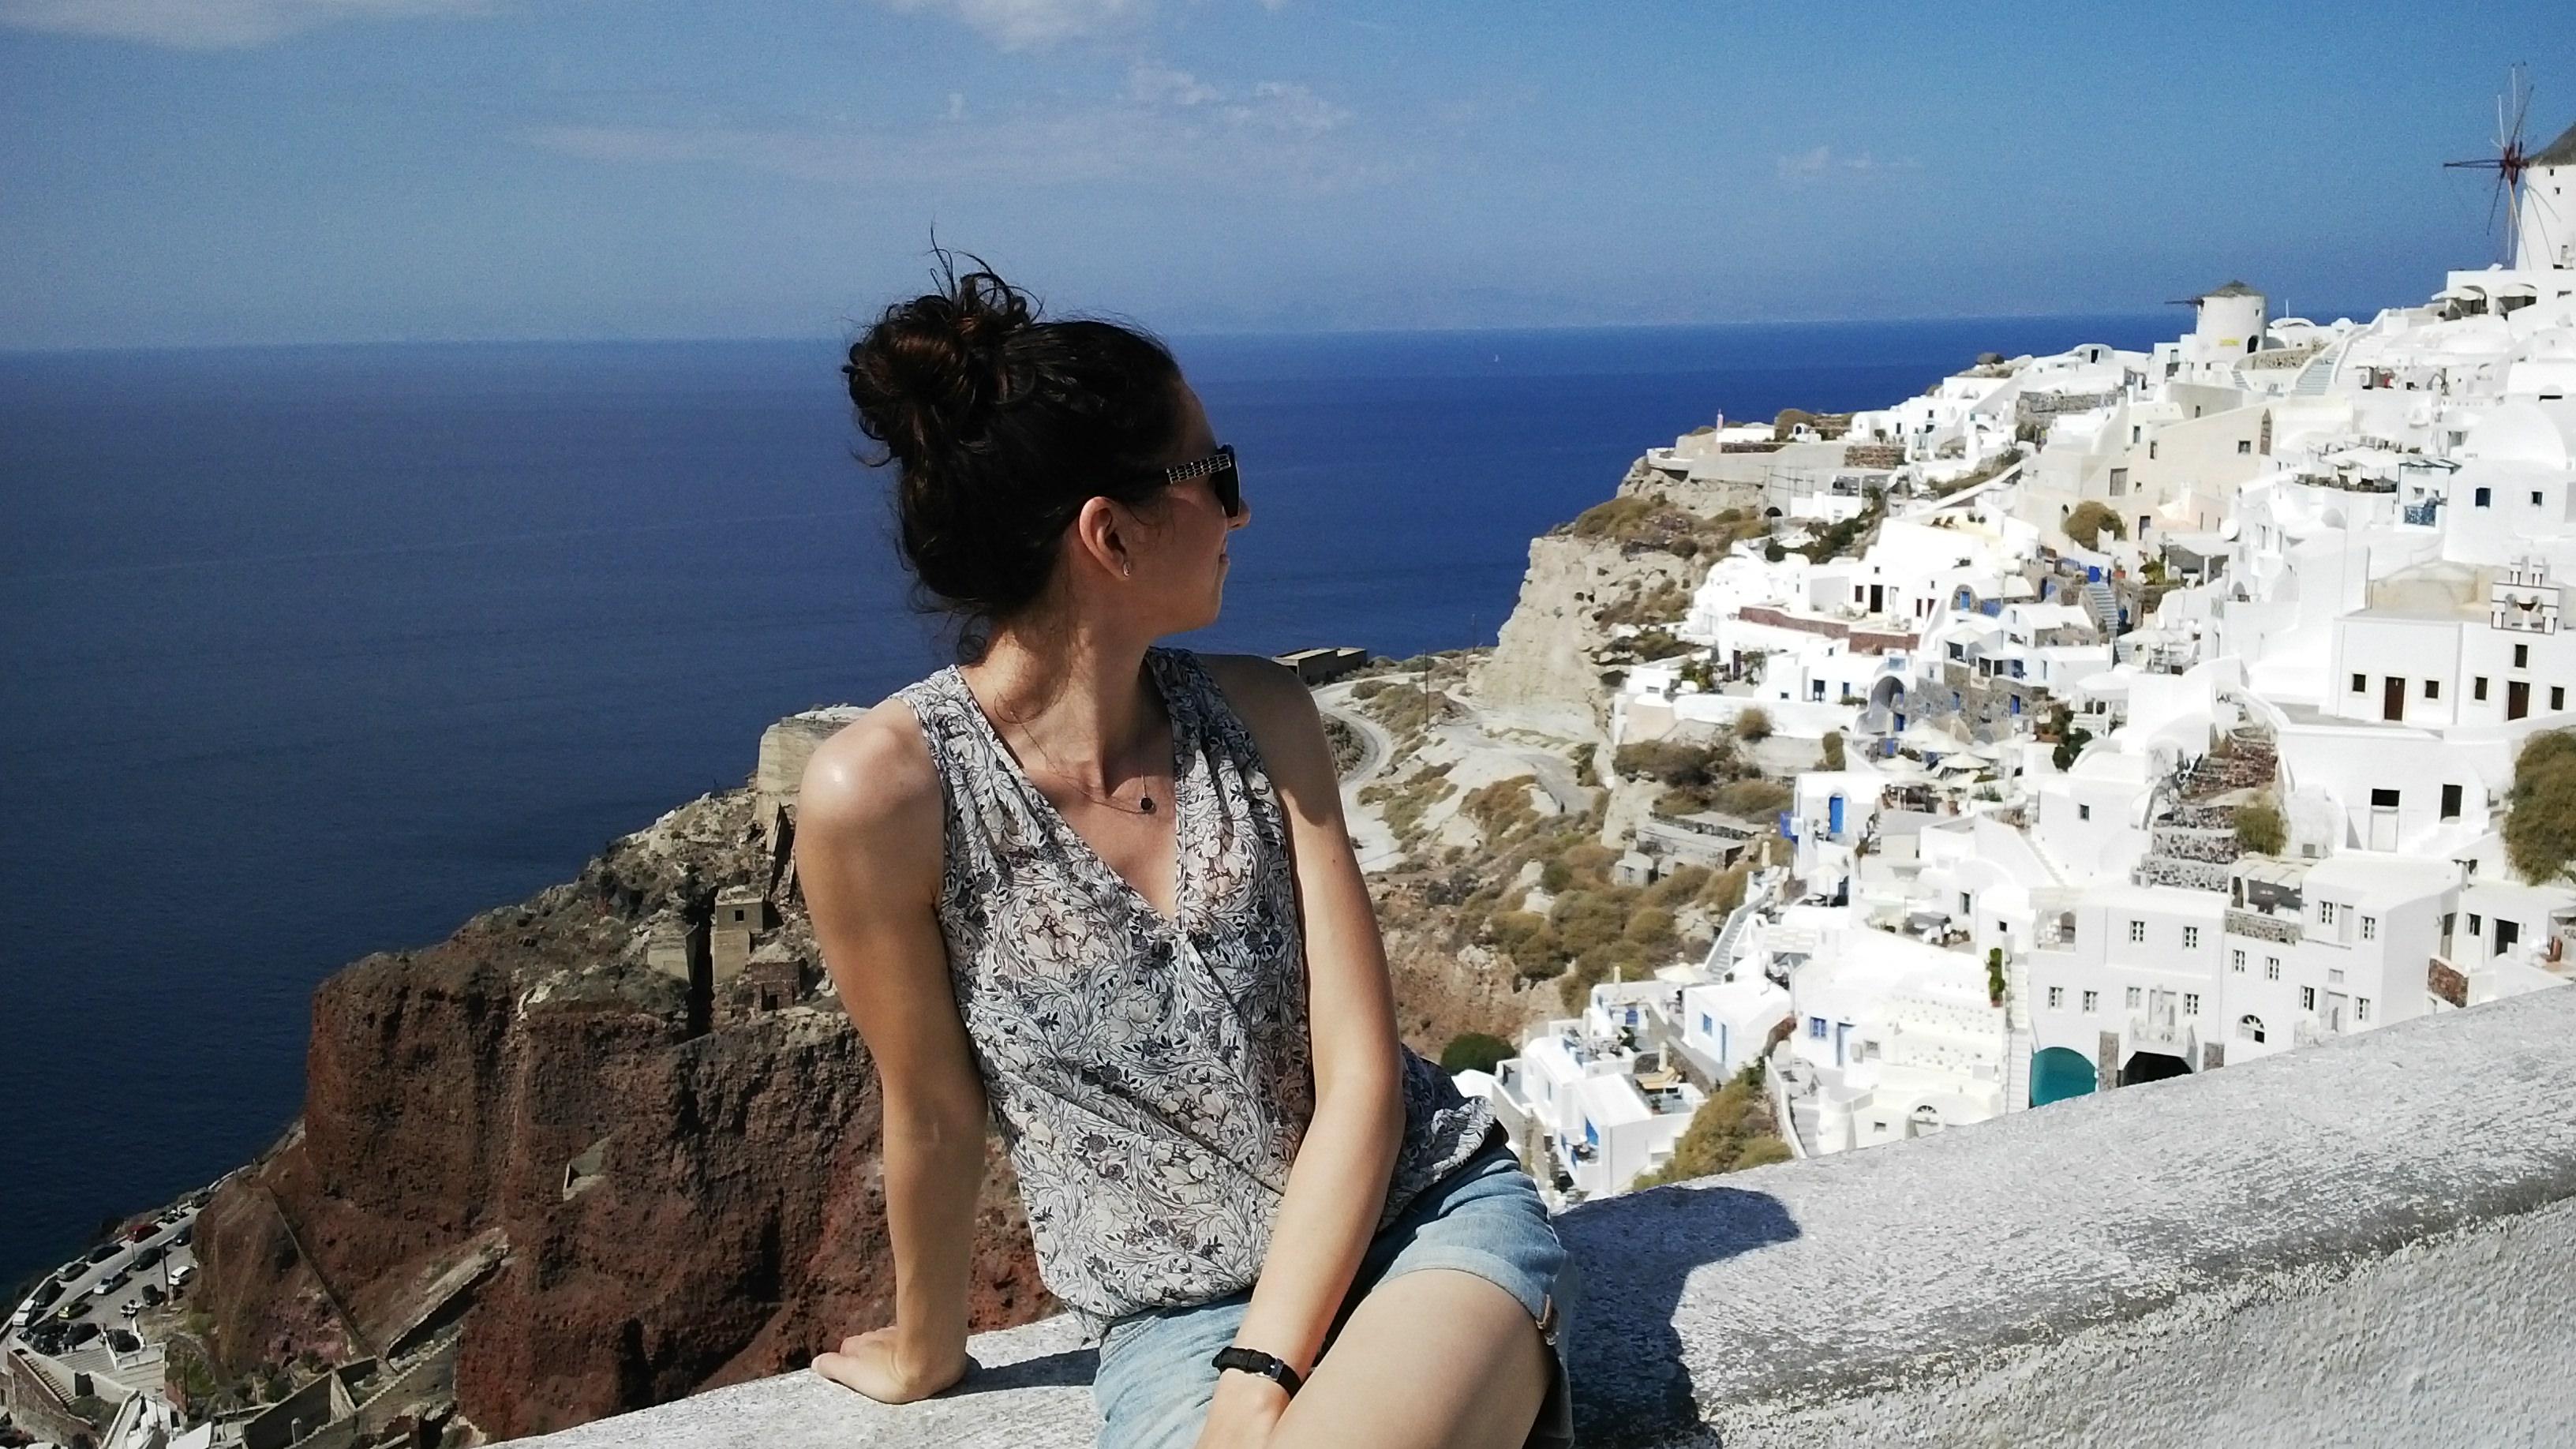 Oksana Belousova, Santorini, Greece